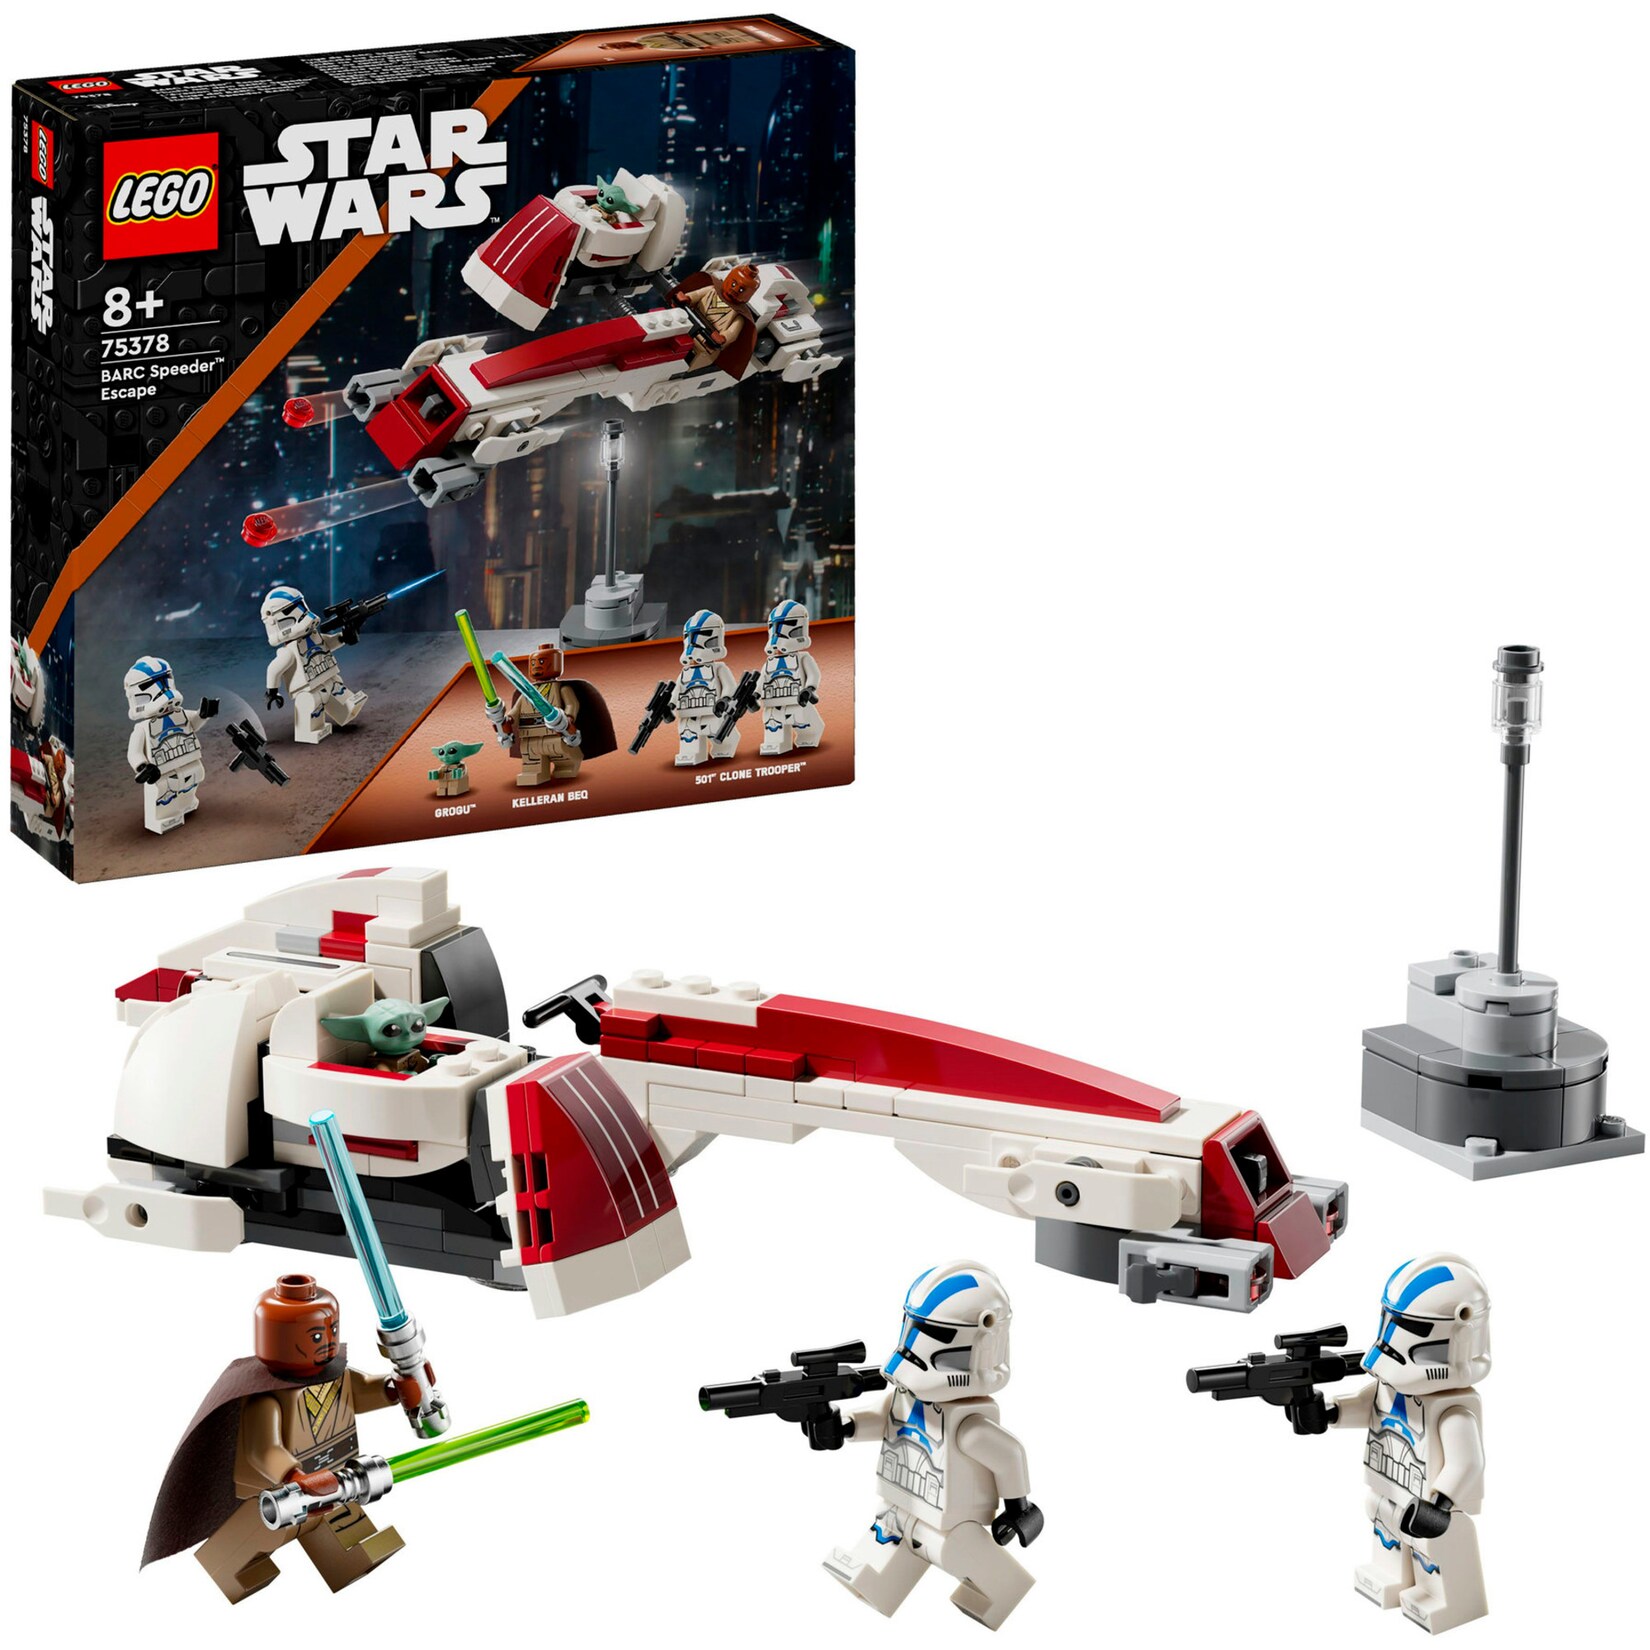 LEGO Konstruktionsspielzeug Star Wars Flucht mit dem BARC Speeder